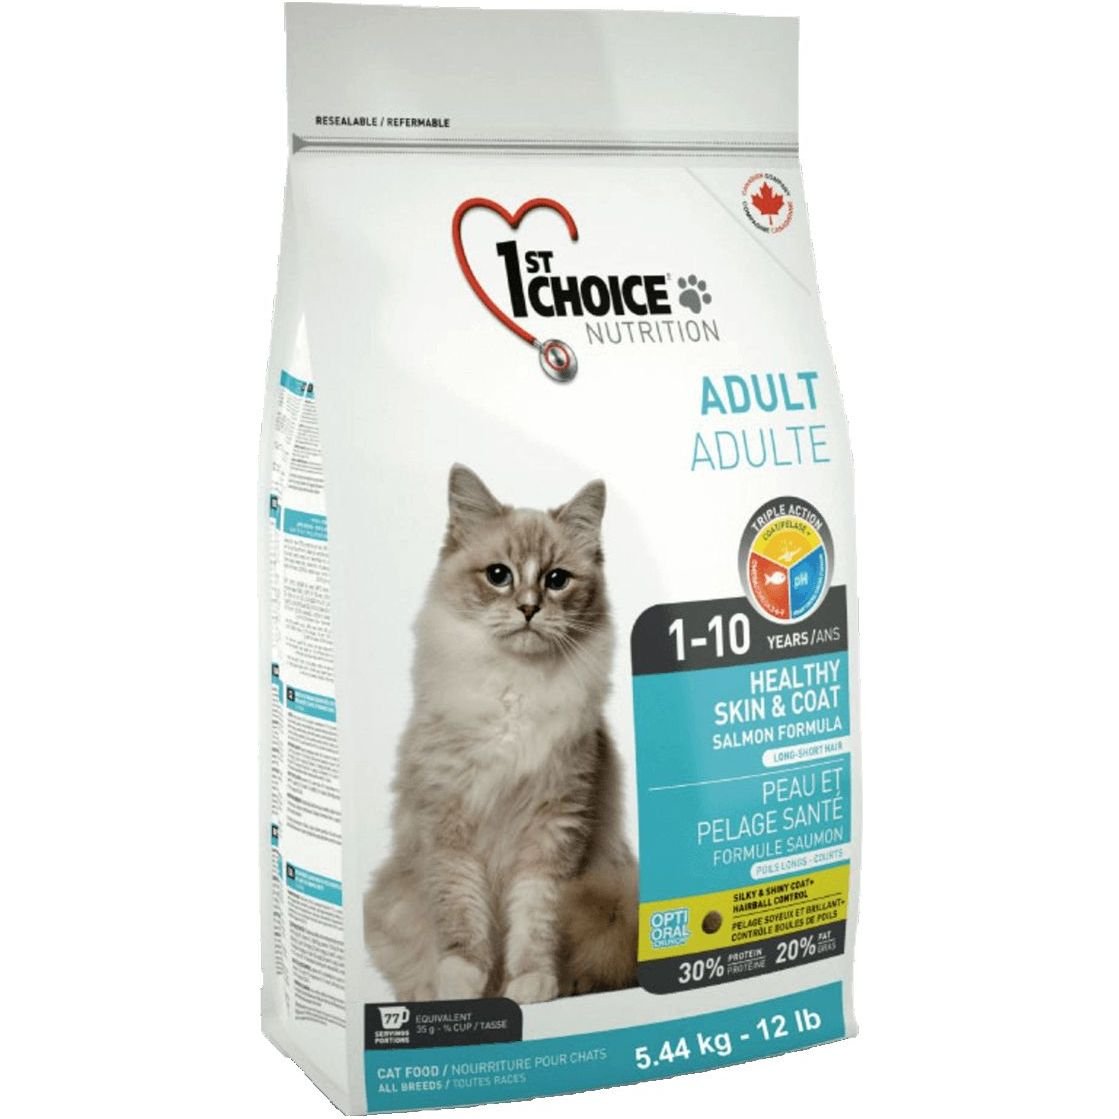 Сухой корм для взрослых кошек 1st Choice Adult Healthy Skin & Coat, с лососем, 5.44 кг - фото 1